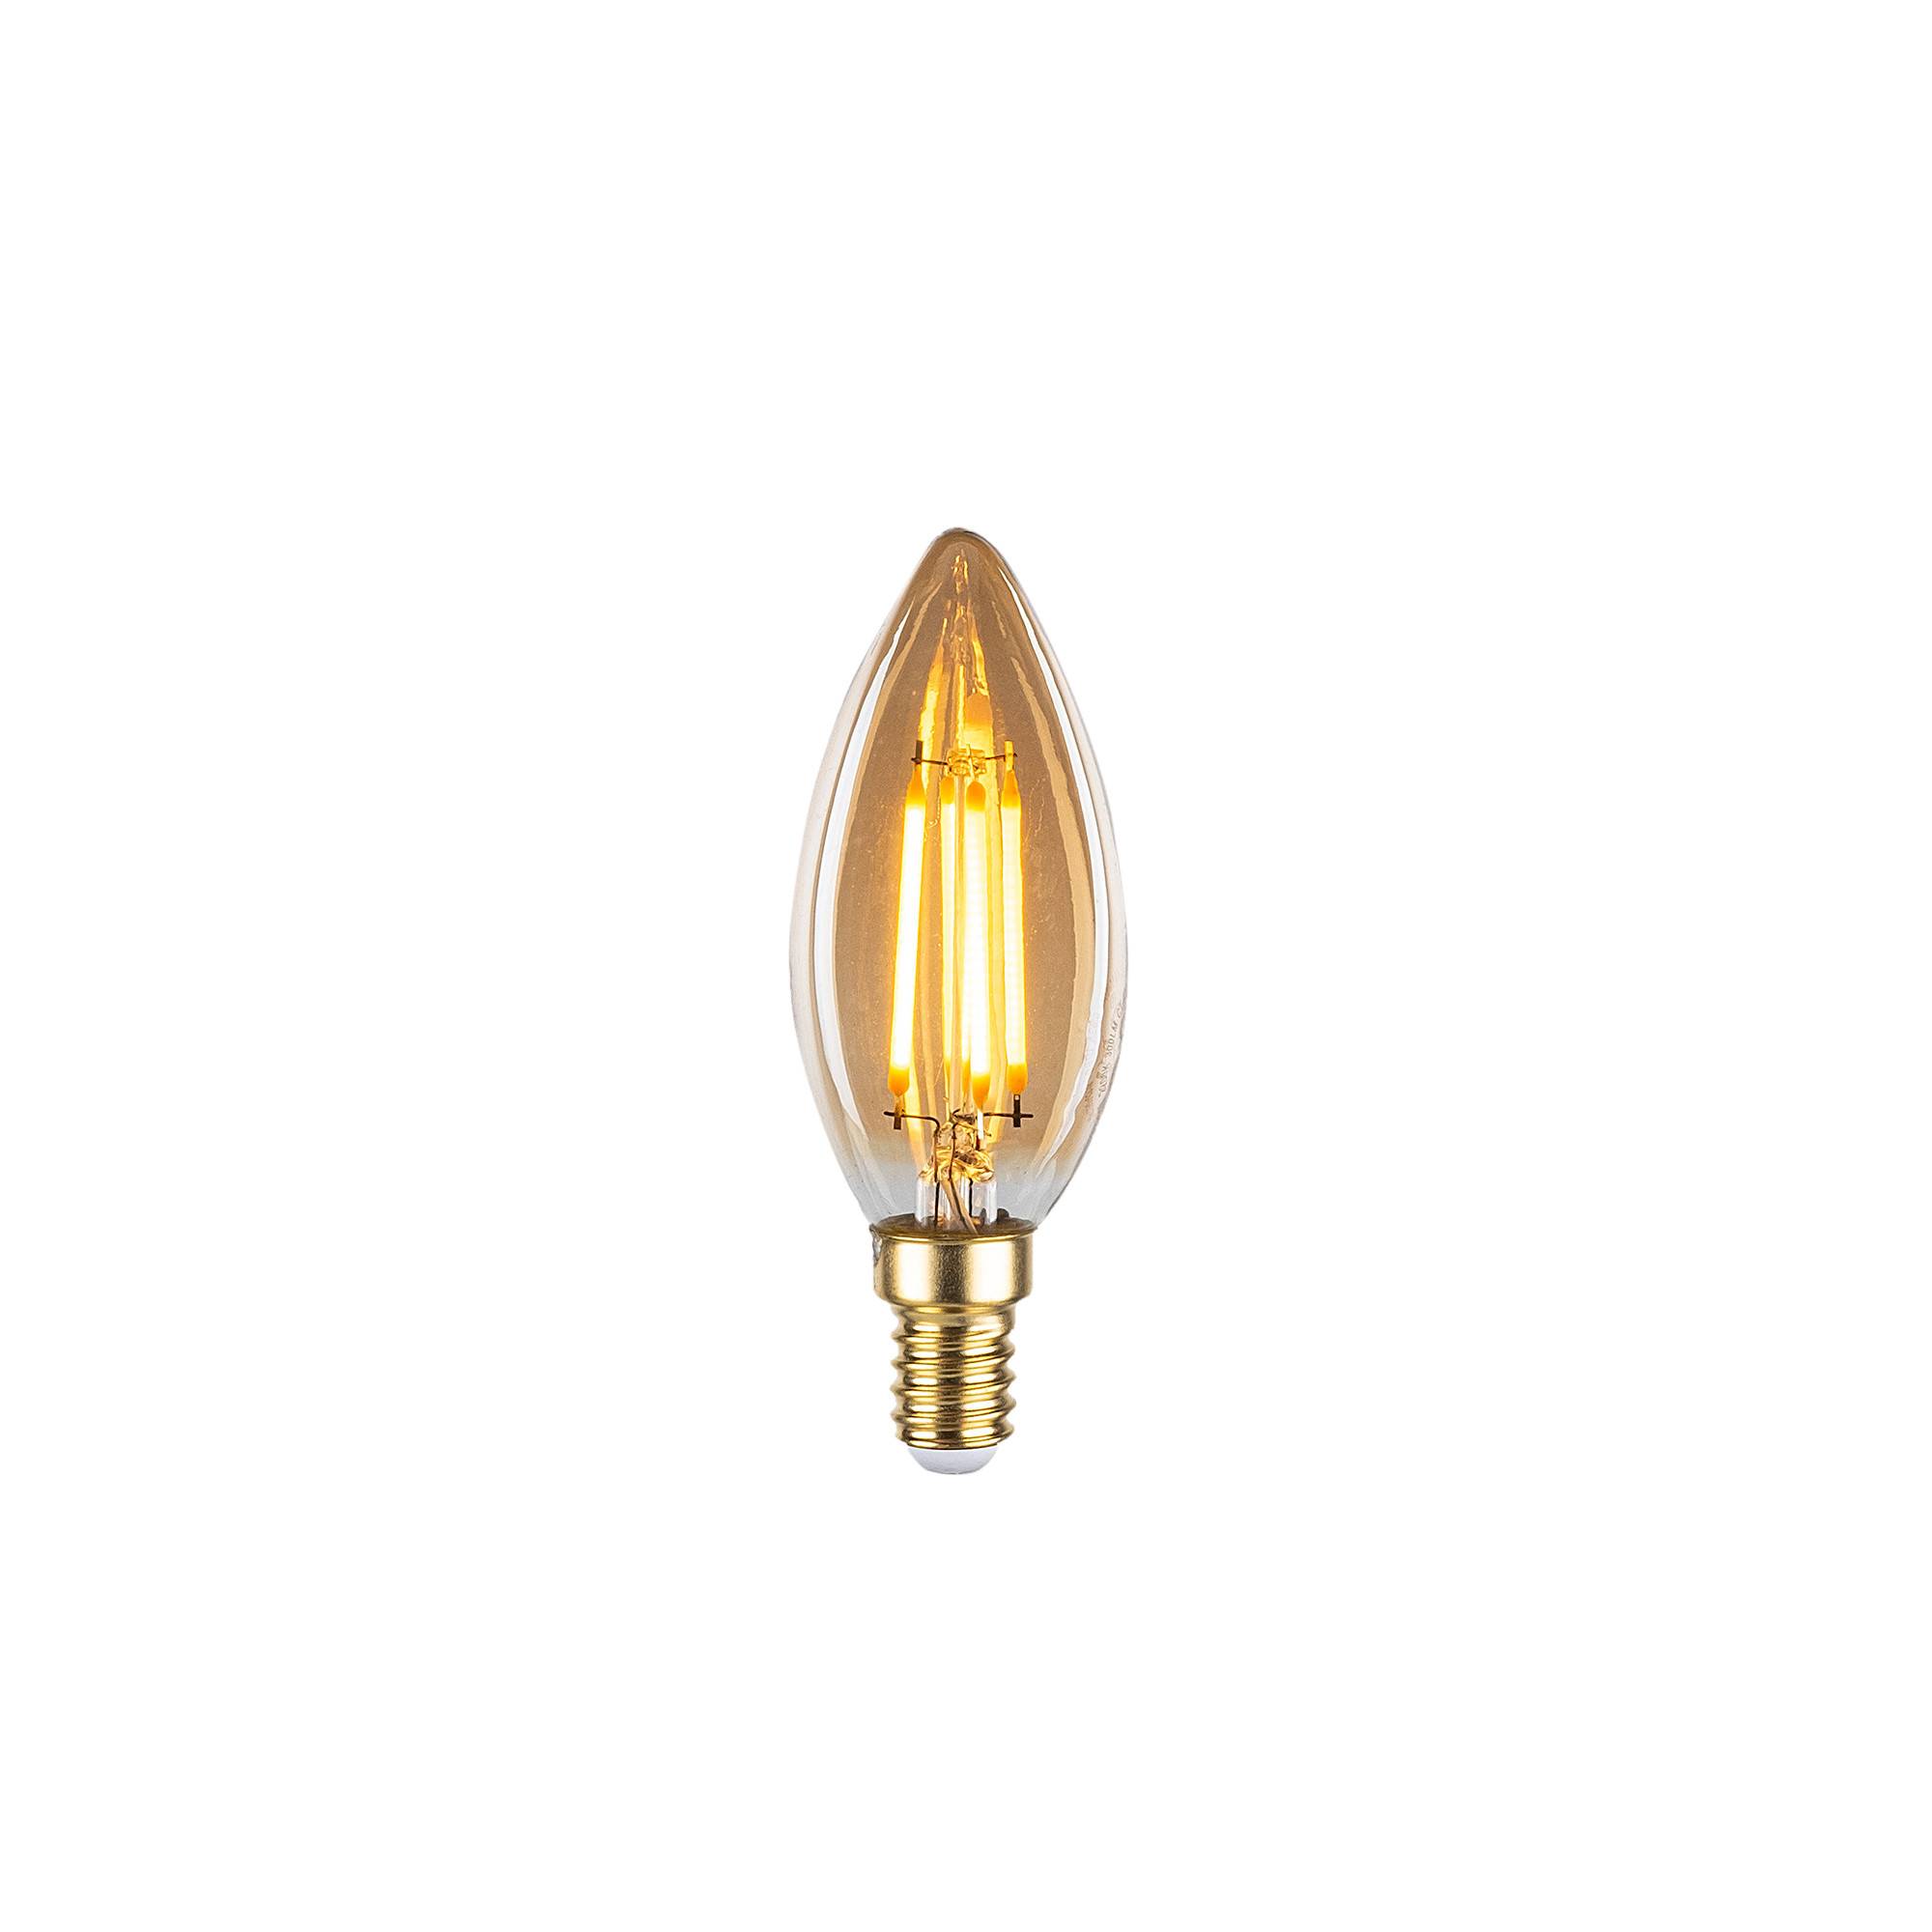 Ampoule LED A+ Claritas 450lm jaune chaud